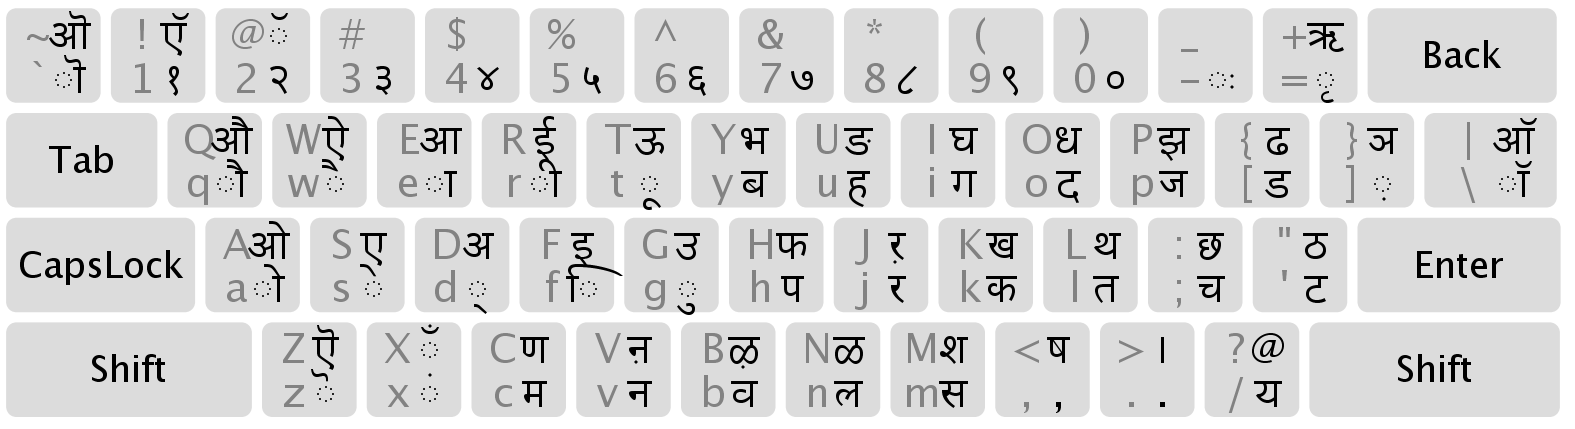 shree lipi marathi keyboard layout pdf